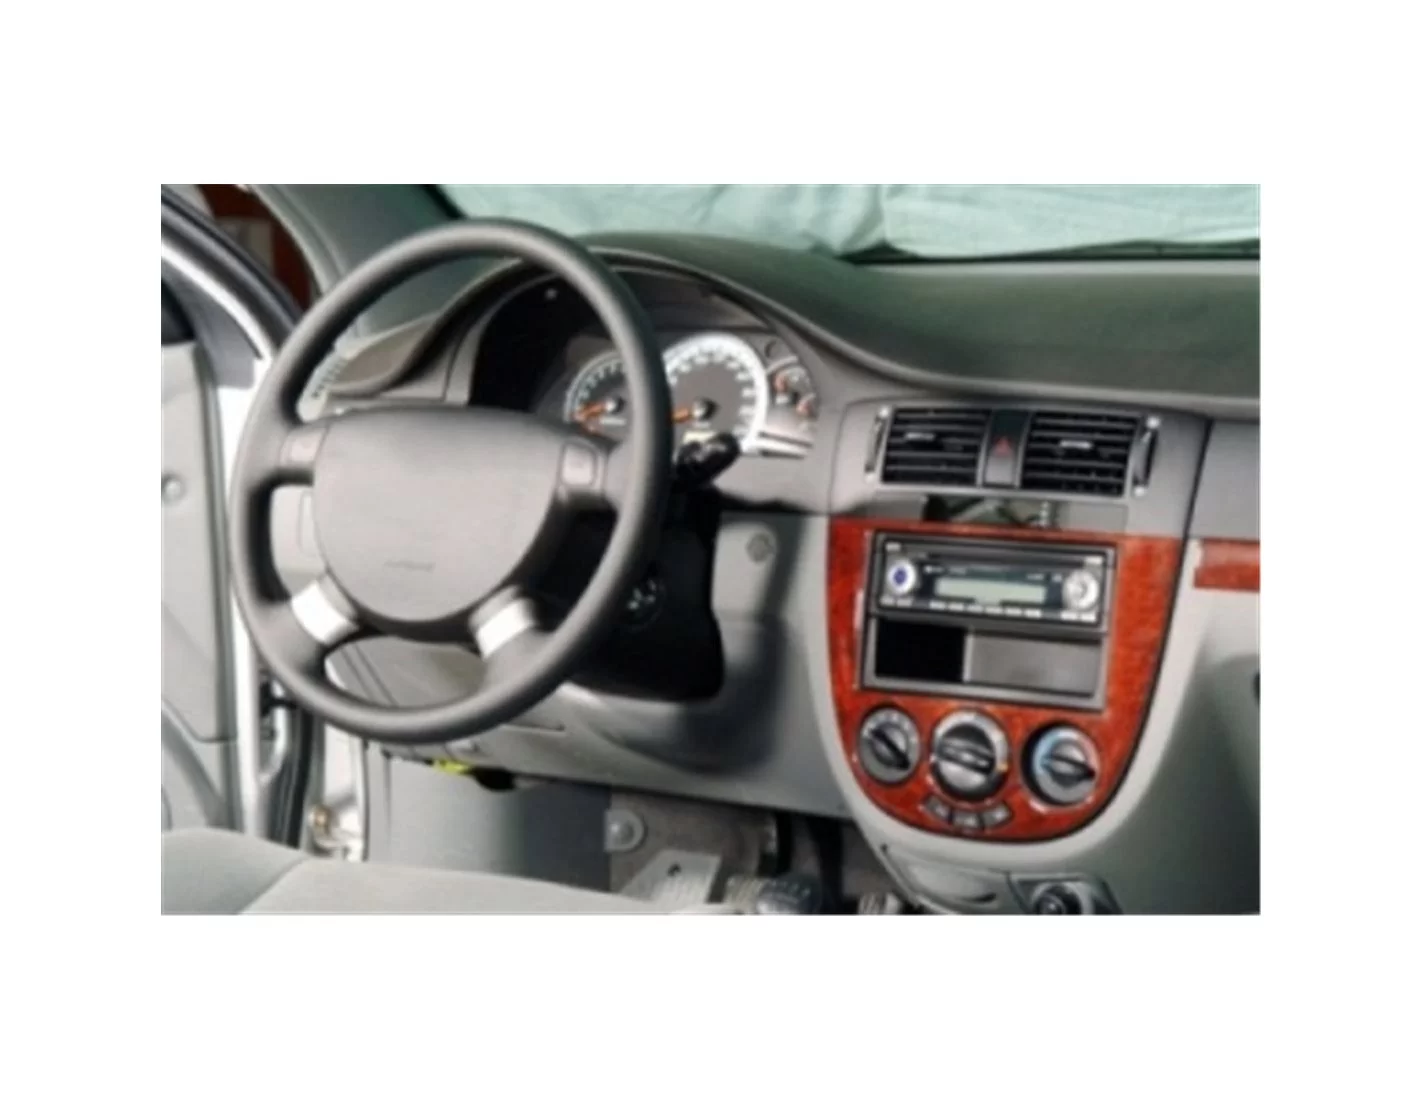 Chevrolet Lacetti Sedan 03.2004 3D Decor de carlinga su interior del coche 15-Partes